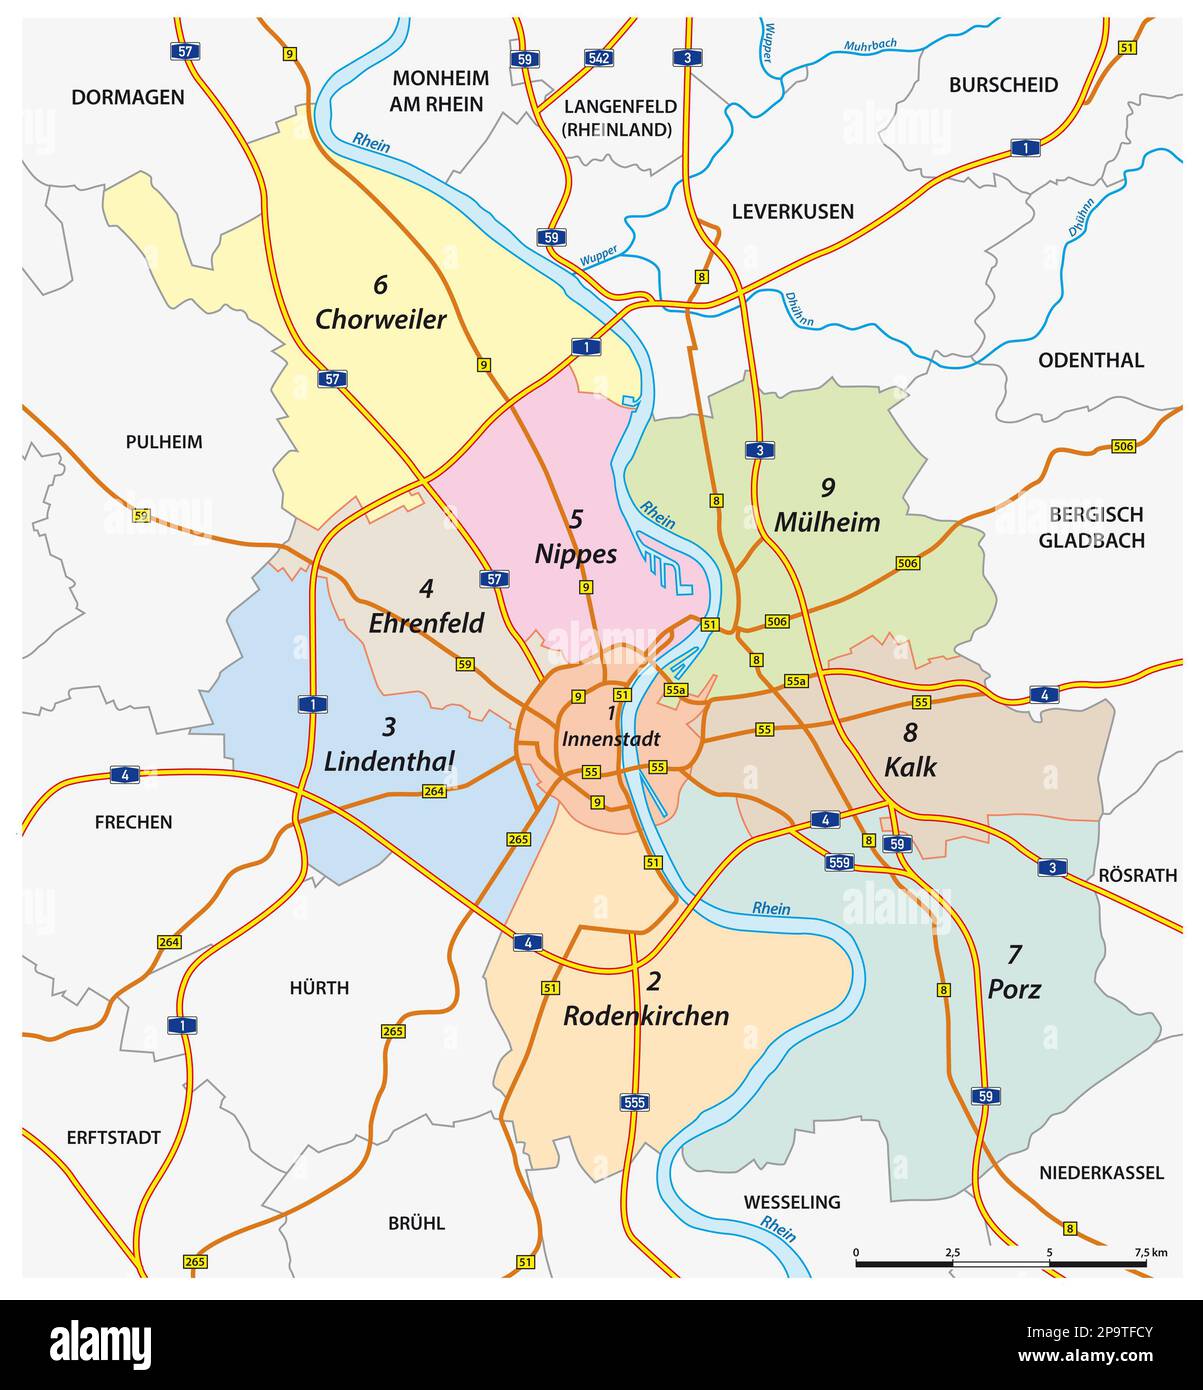 Mappa amministrativa e stradale della città di Colonia, Germania Foto Stock